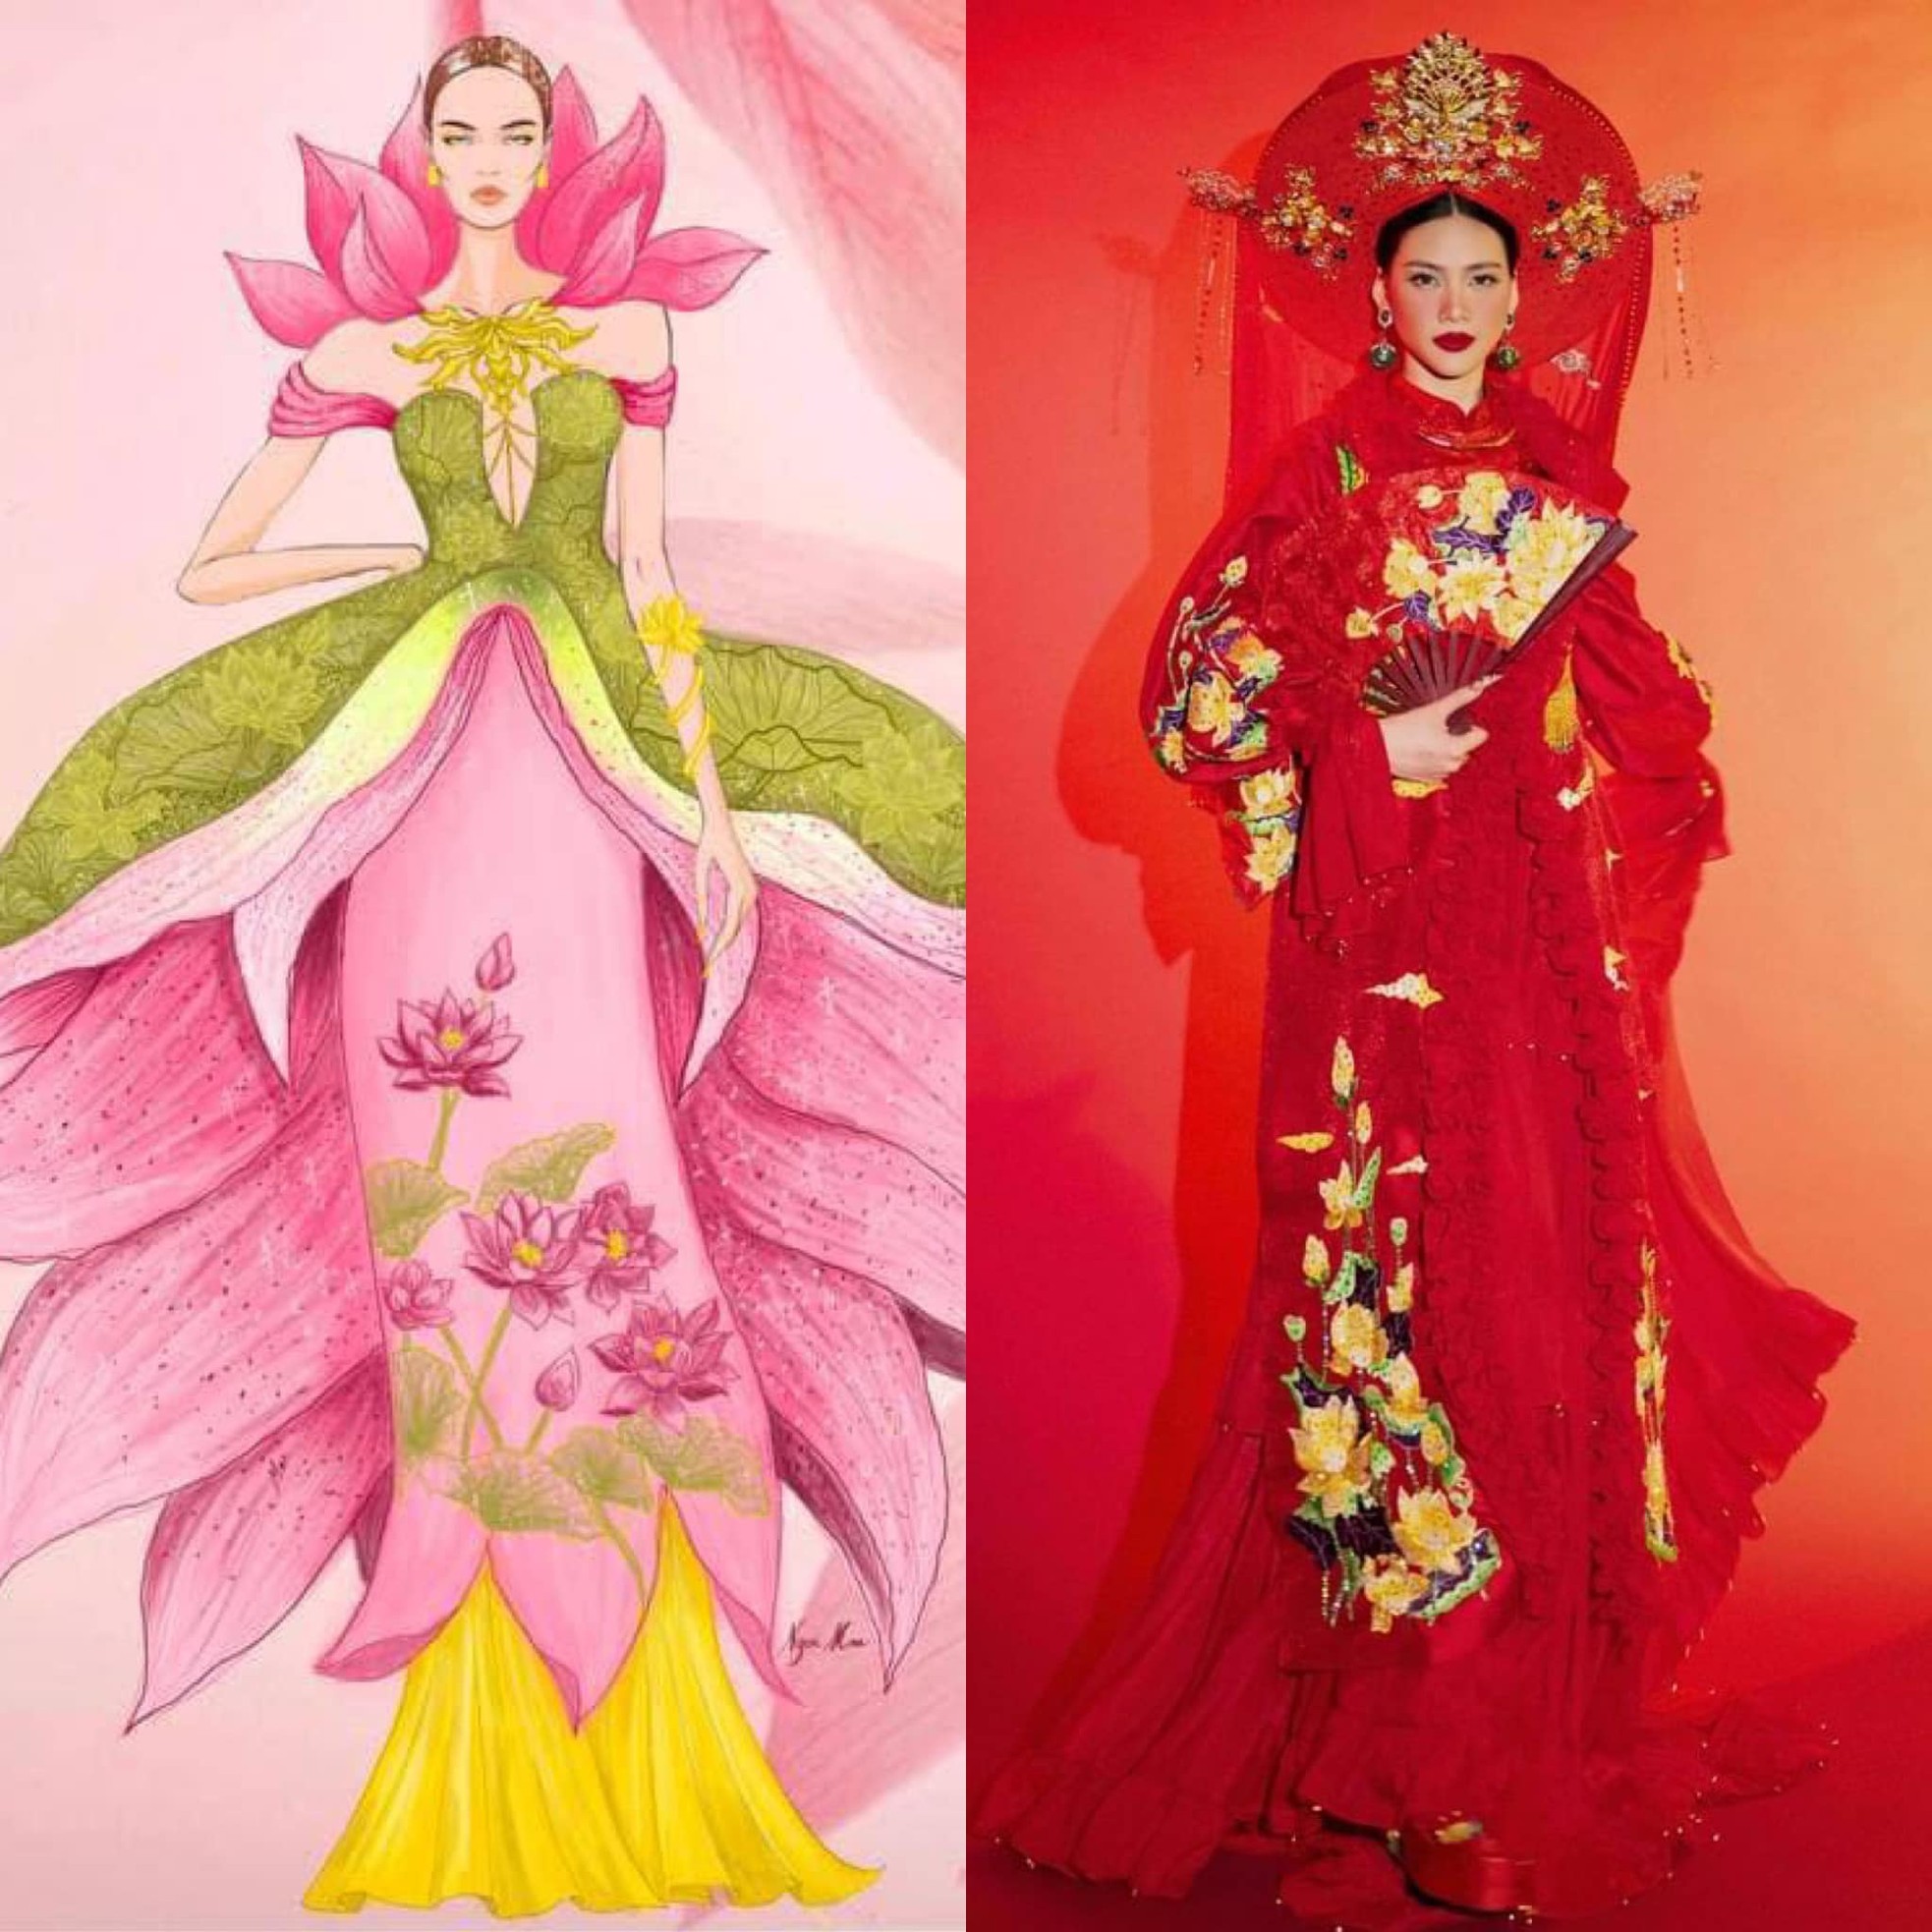 Trang phục dân tộc của Bùi Quỳnh Hoa ở Hoa hậu Hoàn vũ gây tranh cãi - Ảnh 1.